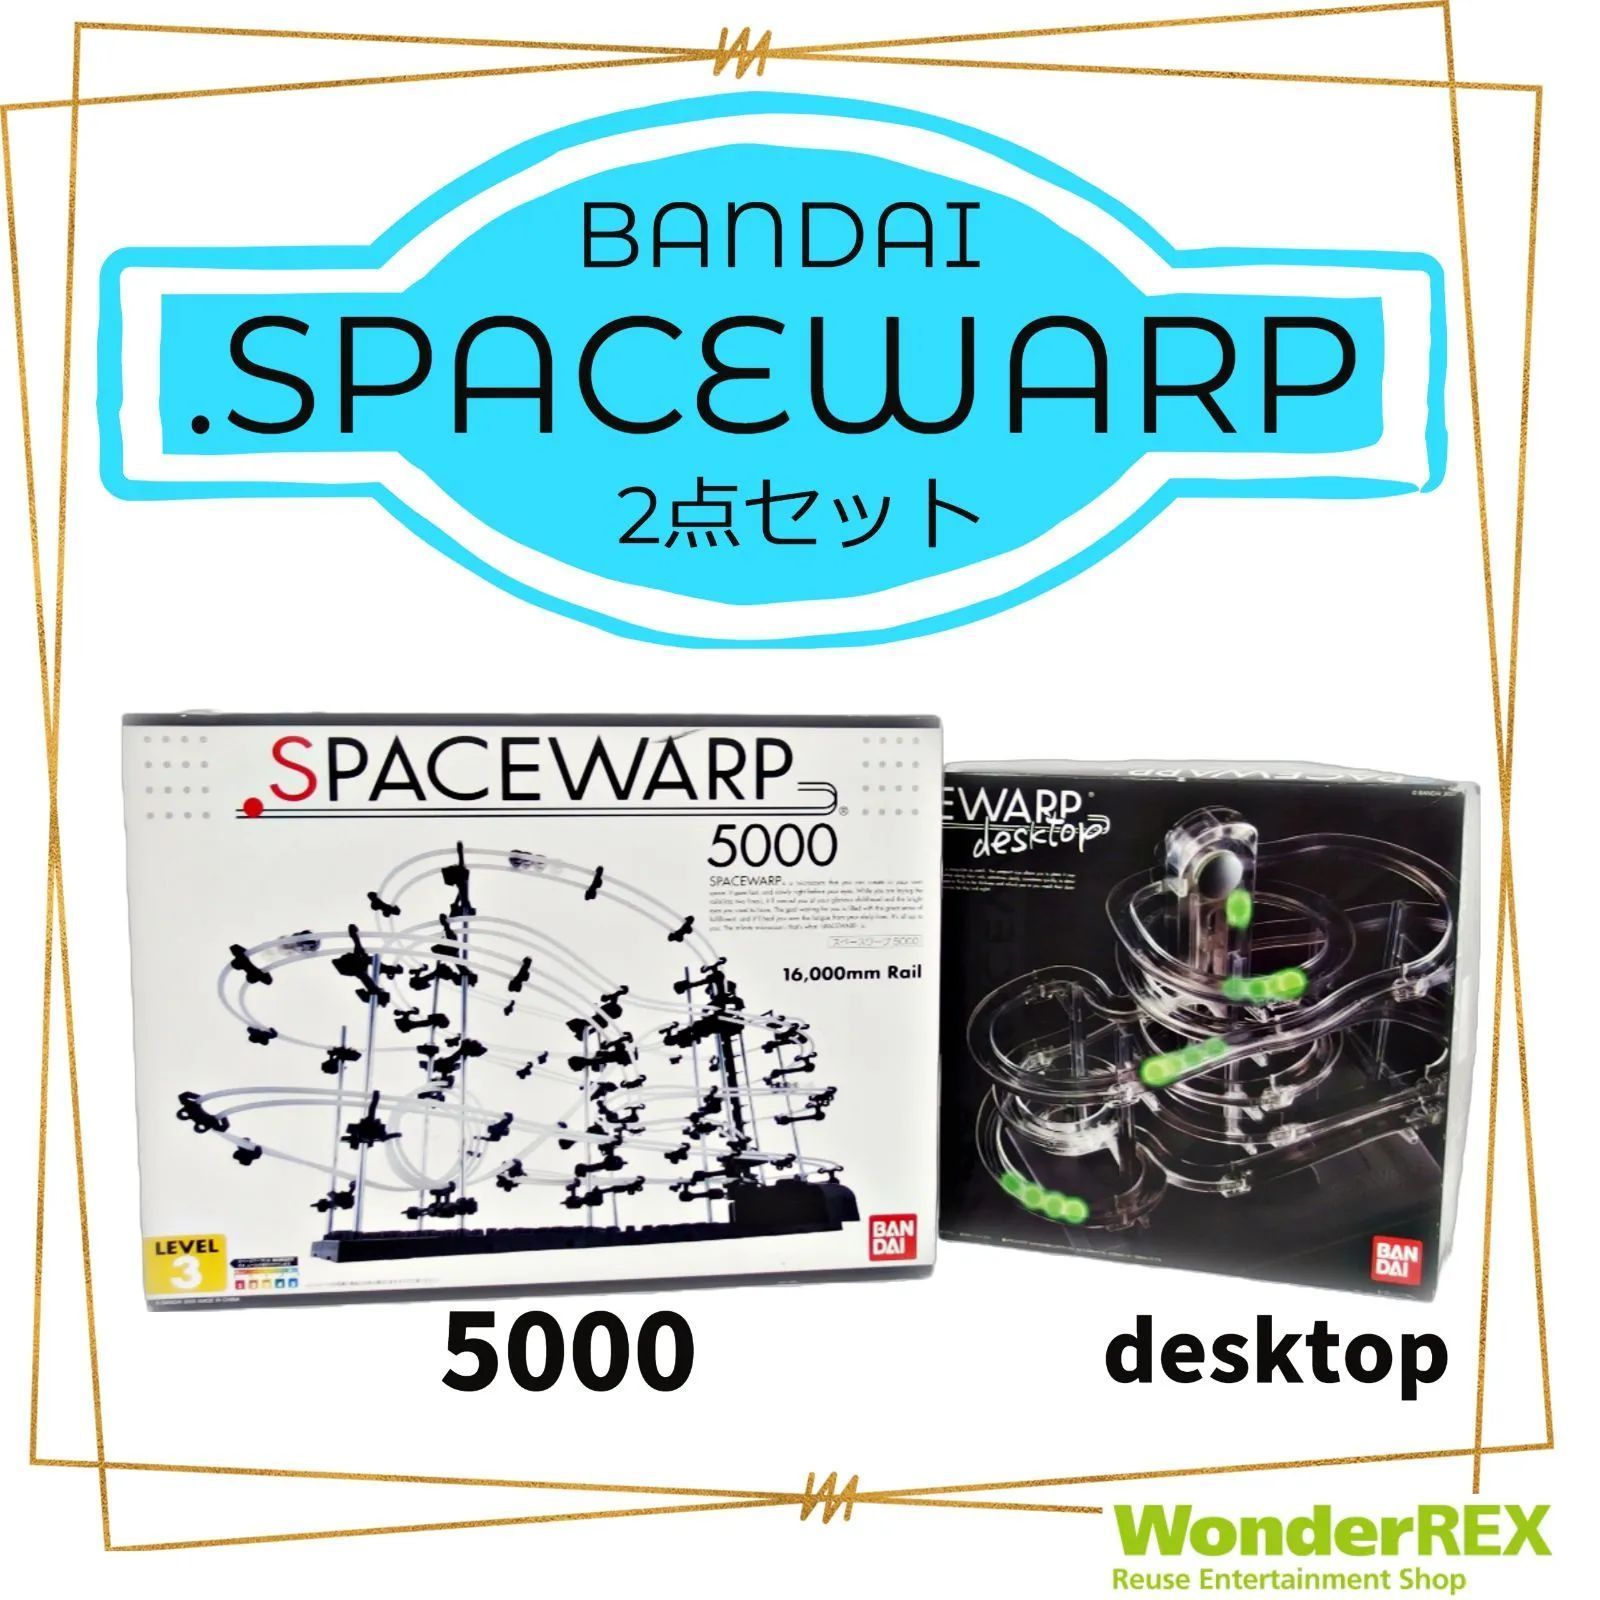 SPACEWARP5000